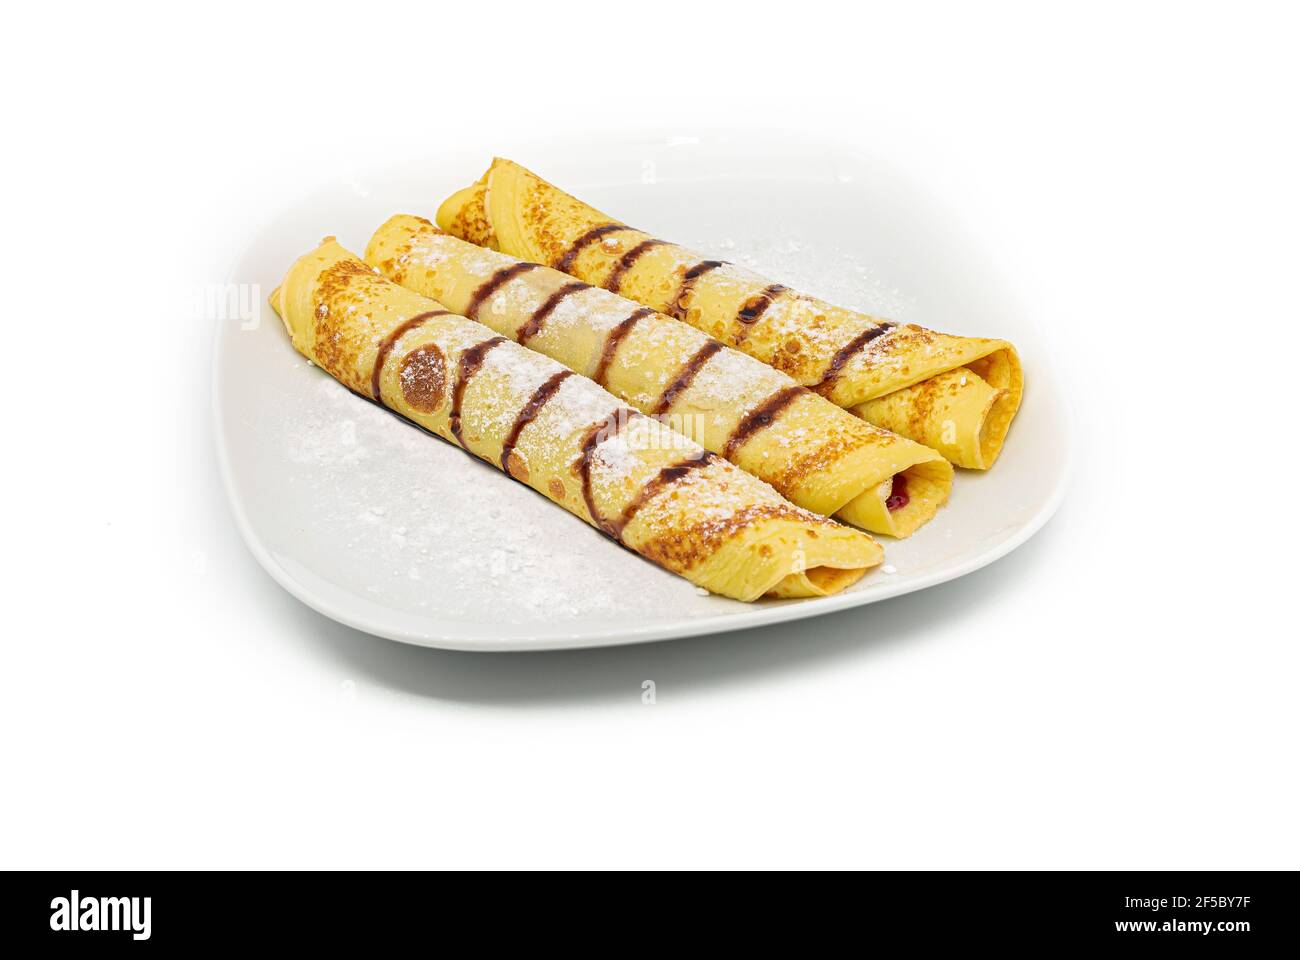 Leckere hausgemachte Crepes oder Pfannkuchen mit Waldfrucht-Marmelade oder Schokoladencreme auf weißem Hintergrund. Stockfoto